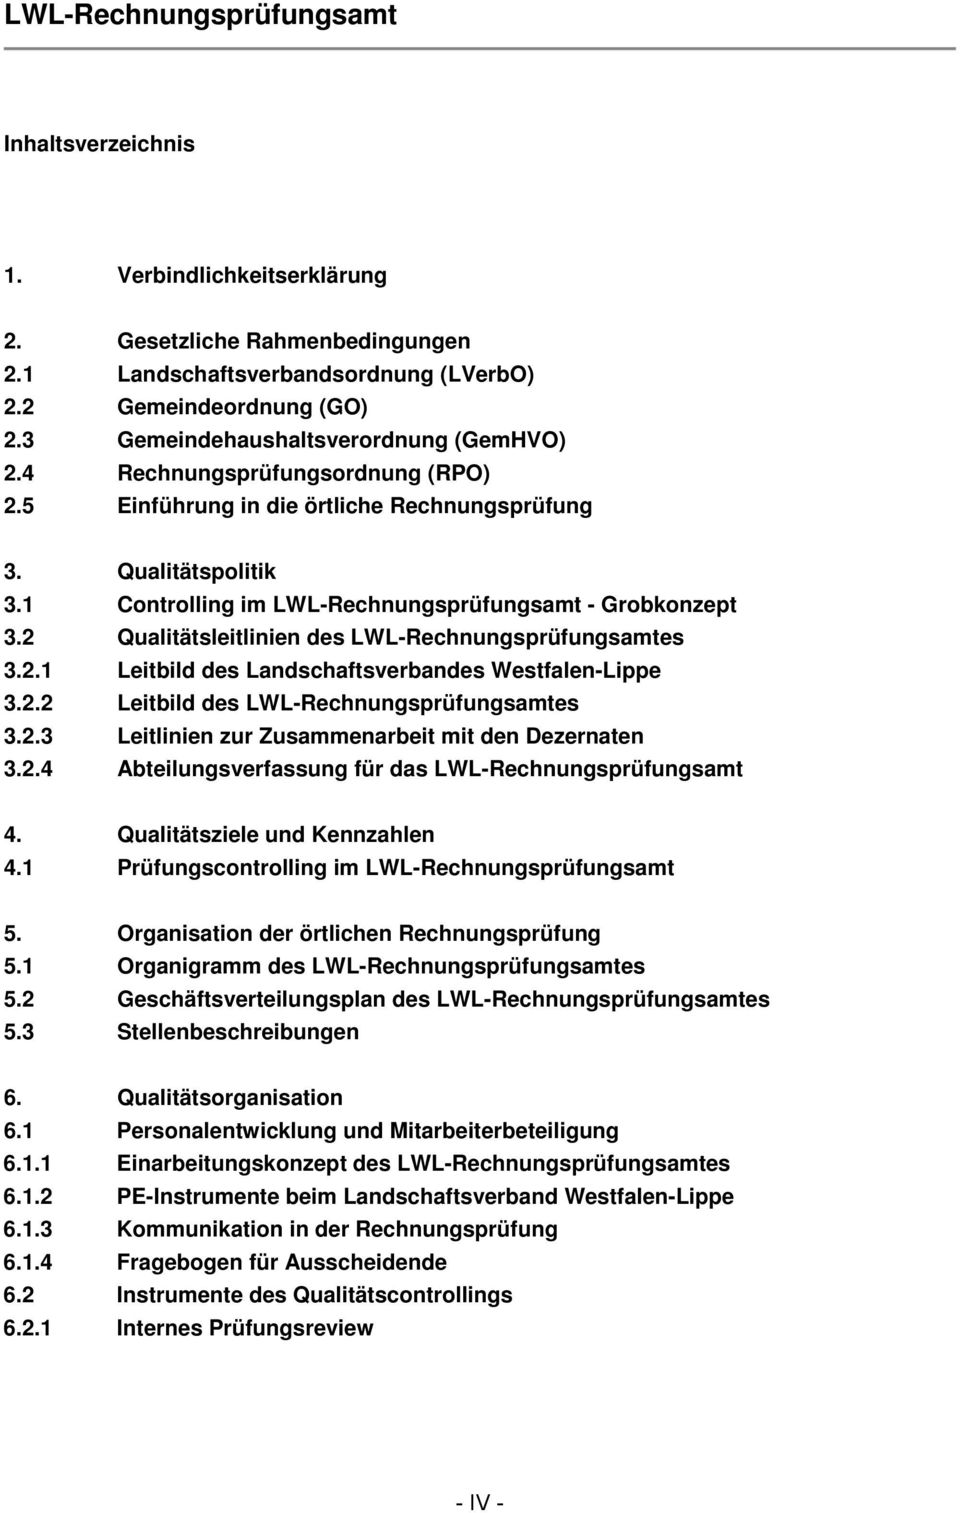 2 Qualitätsleitlinien des LWL-Rechnungsprüfungsamtes 3.2.1 Leitbild des Landschaftsverbandes Westfalen-Lippe 3.2.2 Leitbild des LWL-Rechnungsprüfungsamtes 3.2.3 Leitlinien zur Zusammenarbeit mit den Dezernaten 3.